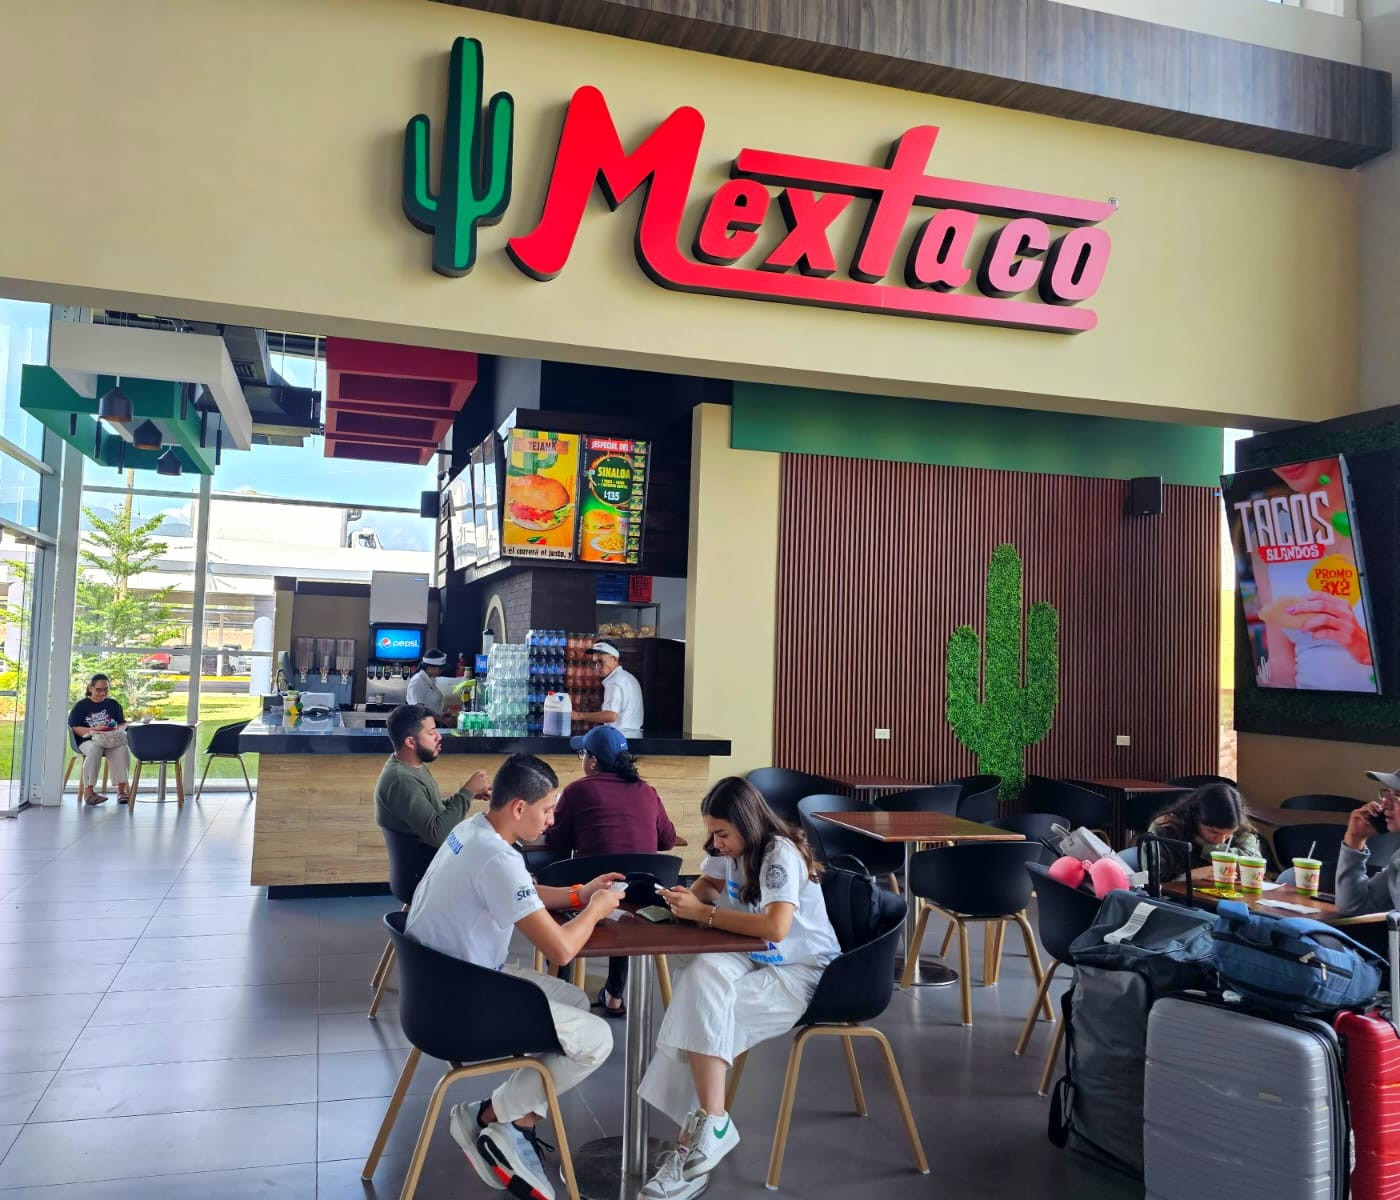 Servicios-Aeropuerto-Comayagua-Honduras-Palmerola-El restaurante Mextaco ya está en Palmerola